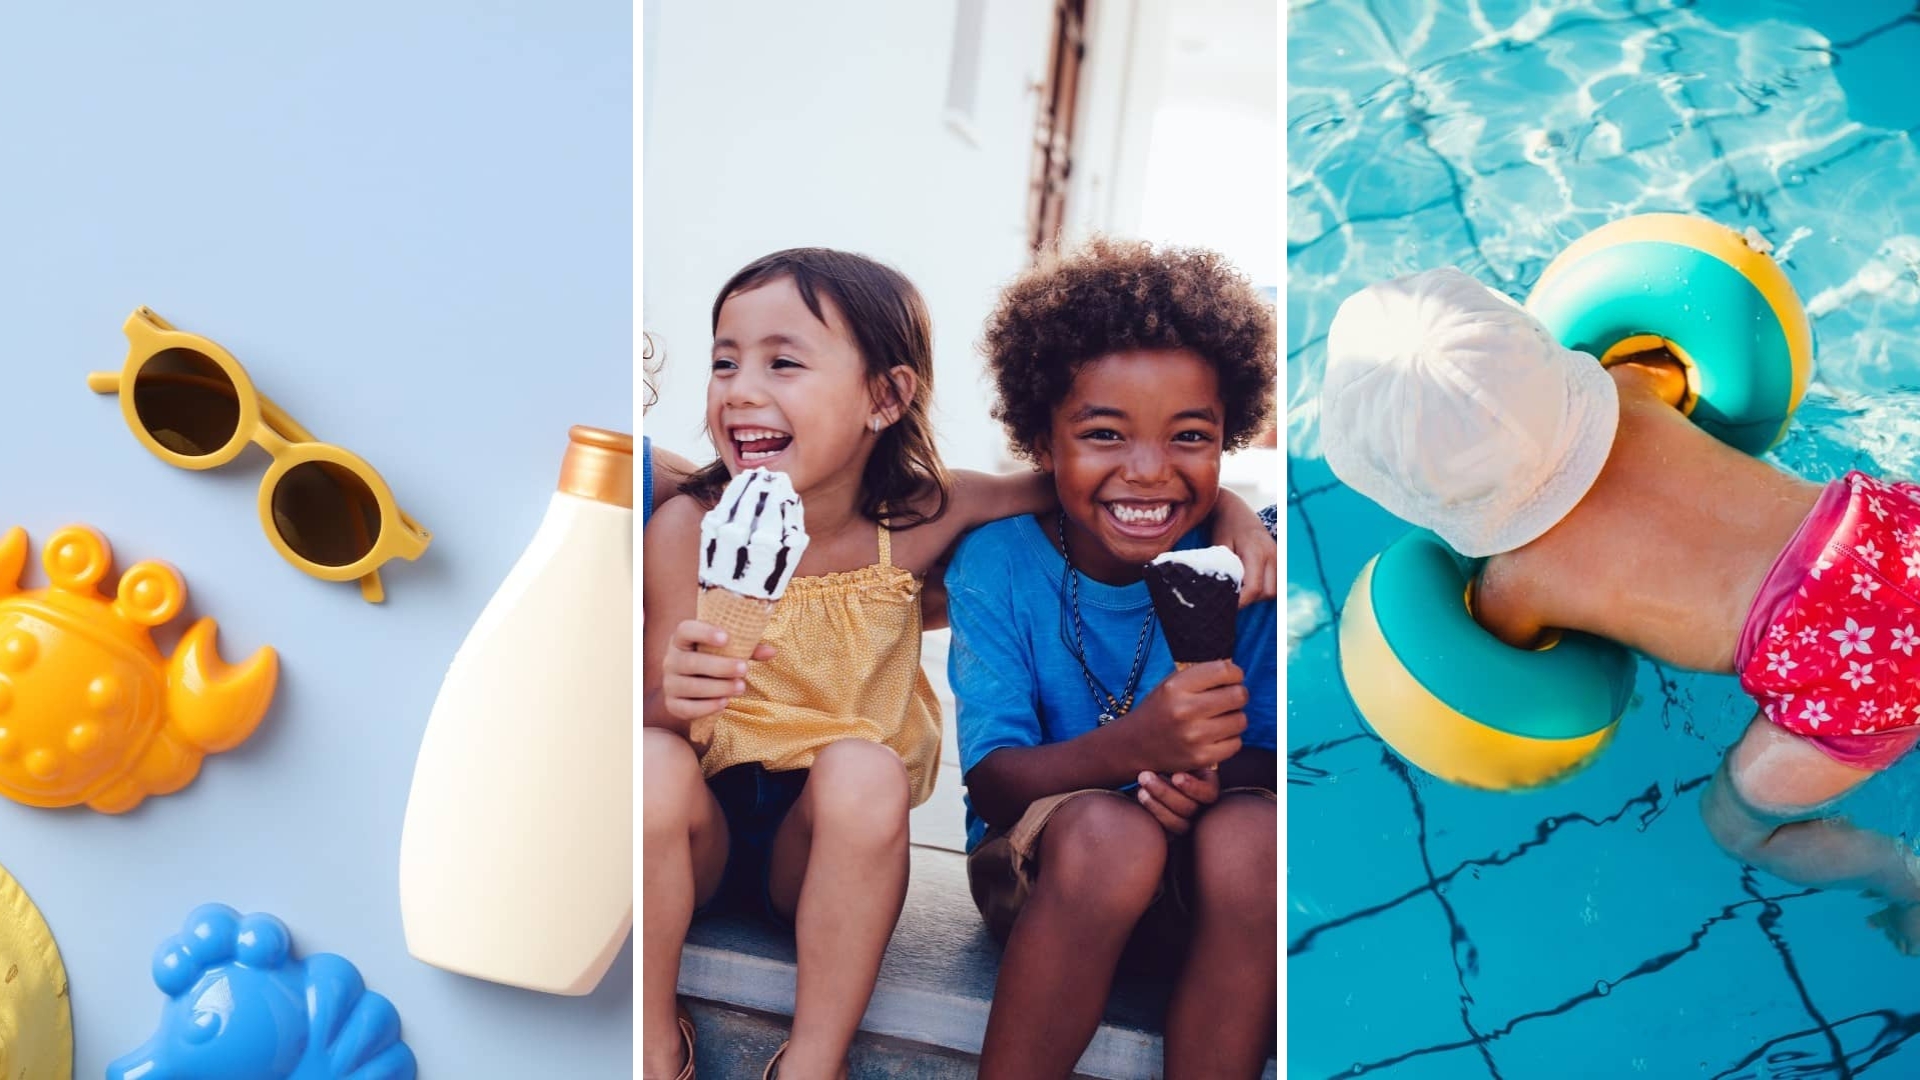 Zomerproof – 8 tips voor een veilige en zorgeloze zomer met kinderen